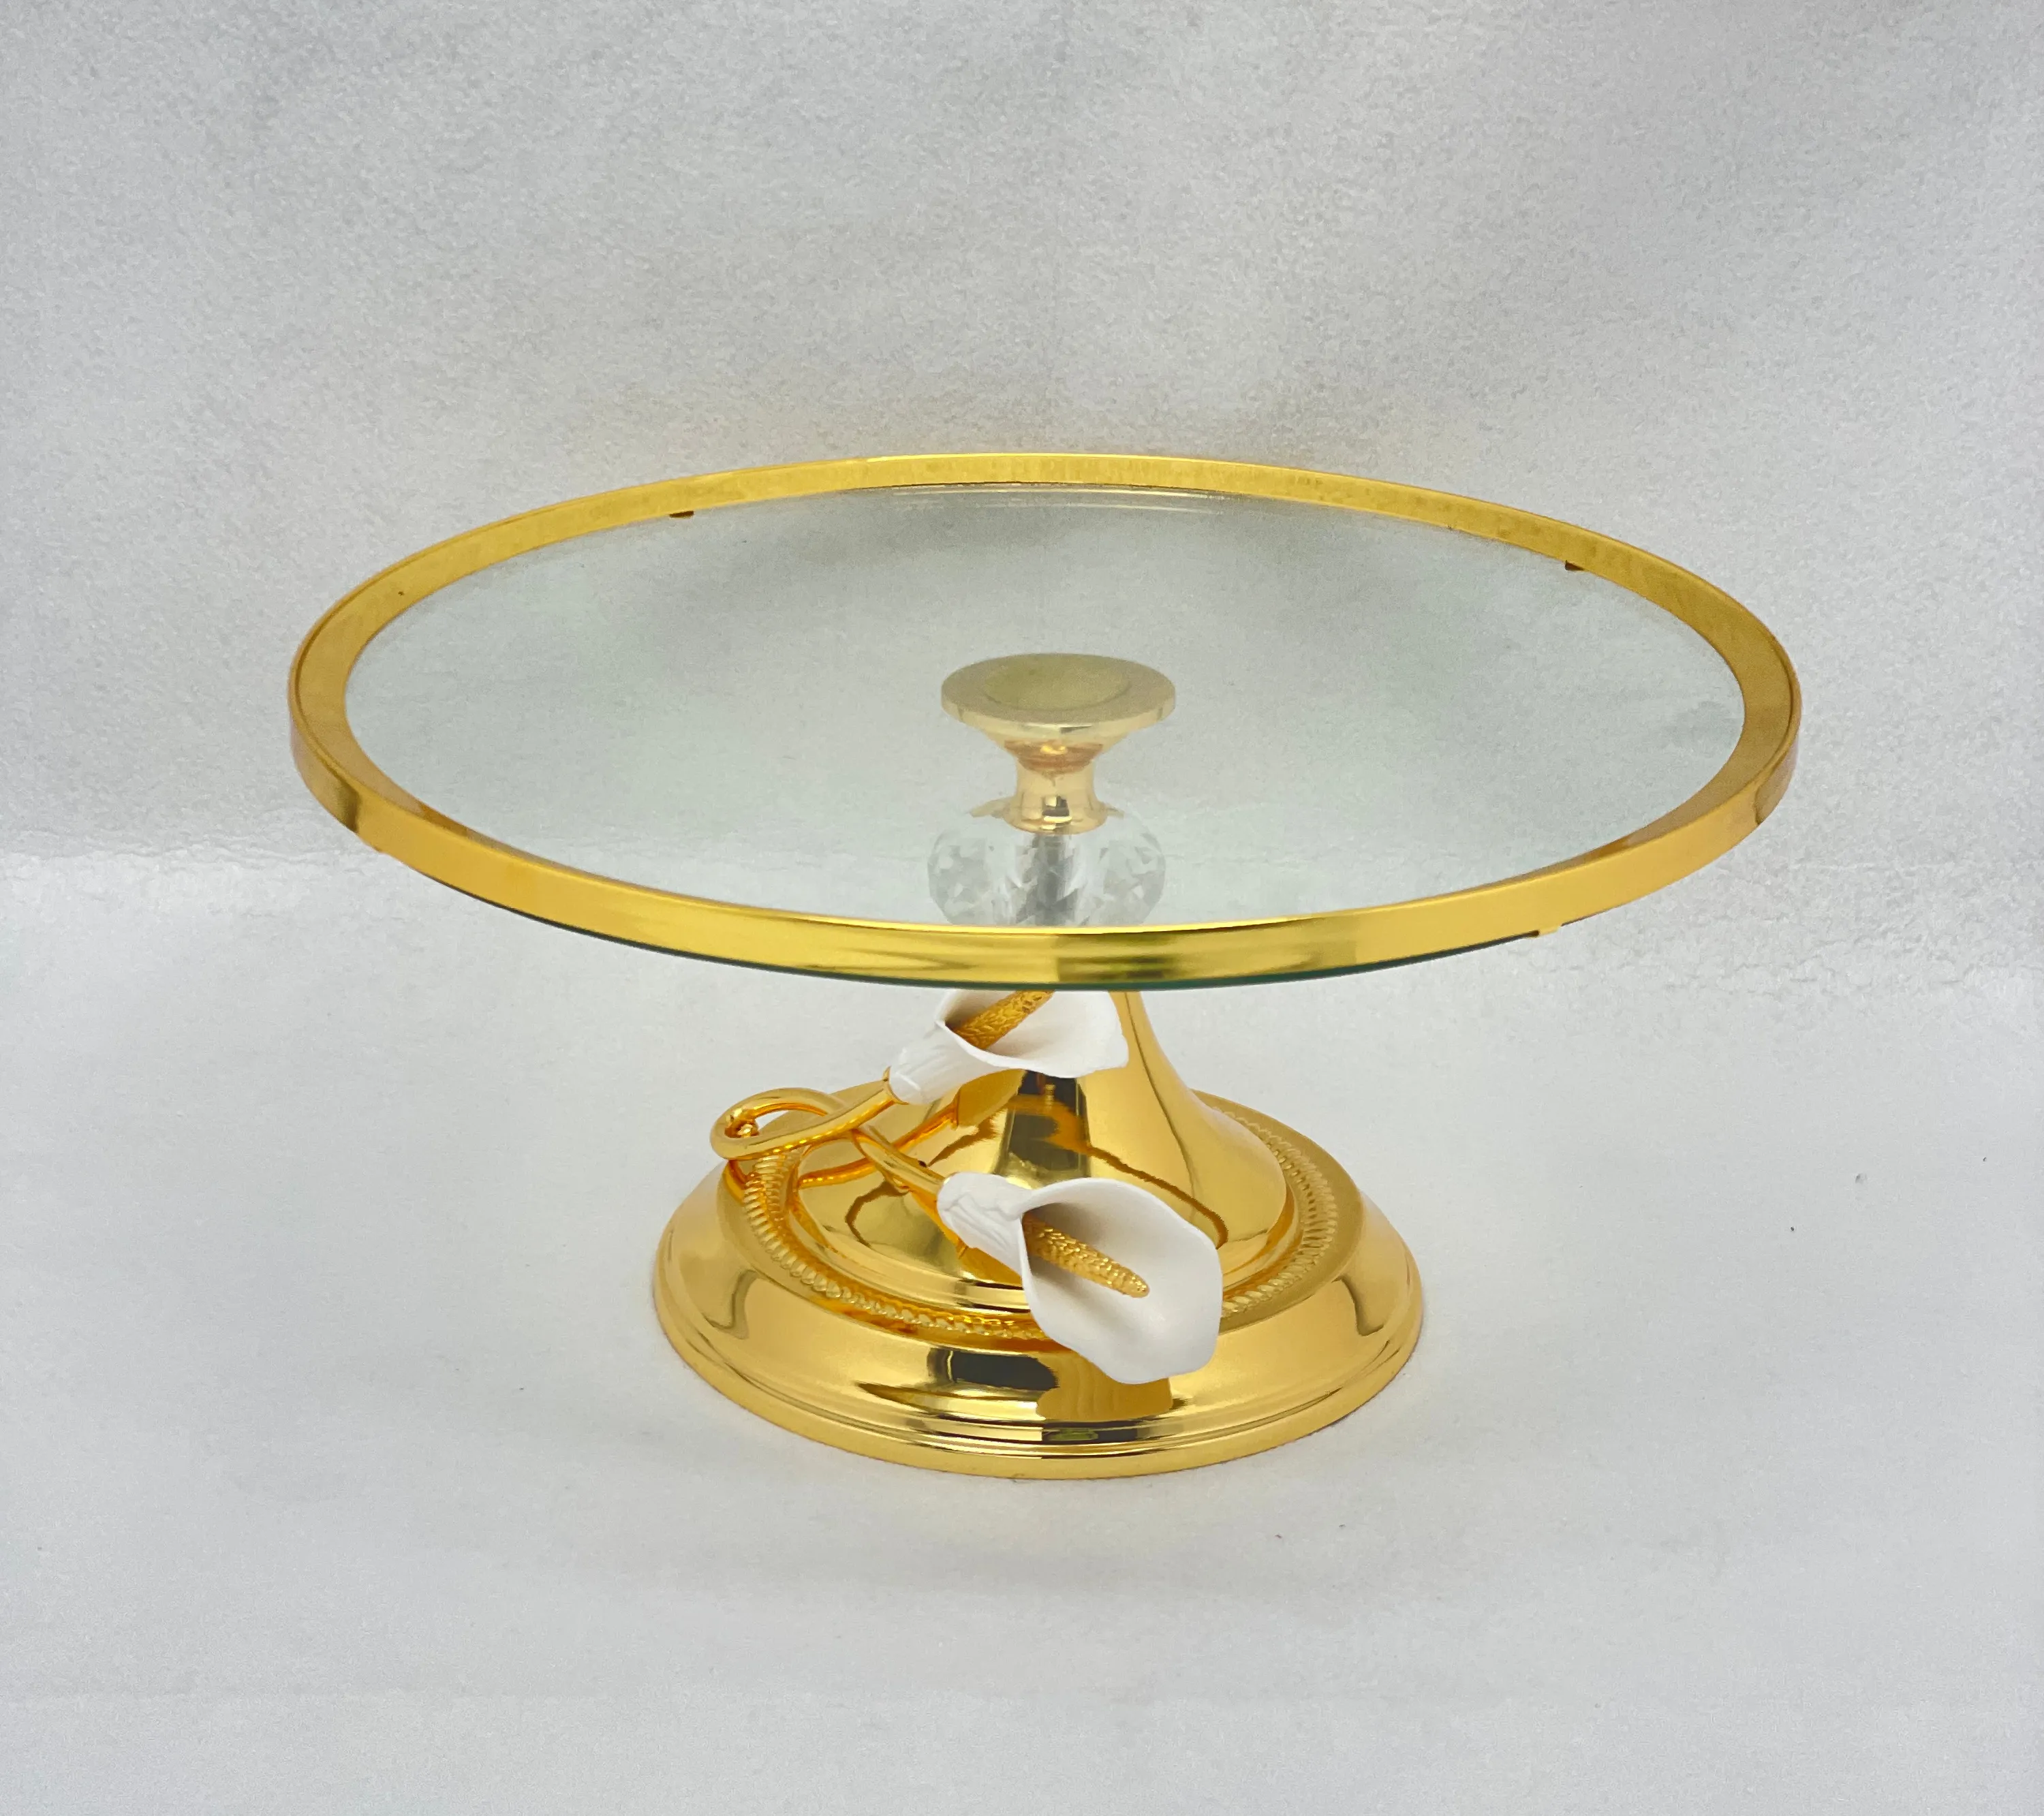 Banhado a ouro ou banhado a prata árabe 12 polegadas Round Cake Stand para Party Restaurant placa de vidro com base